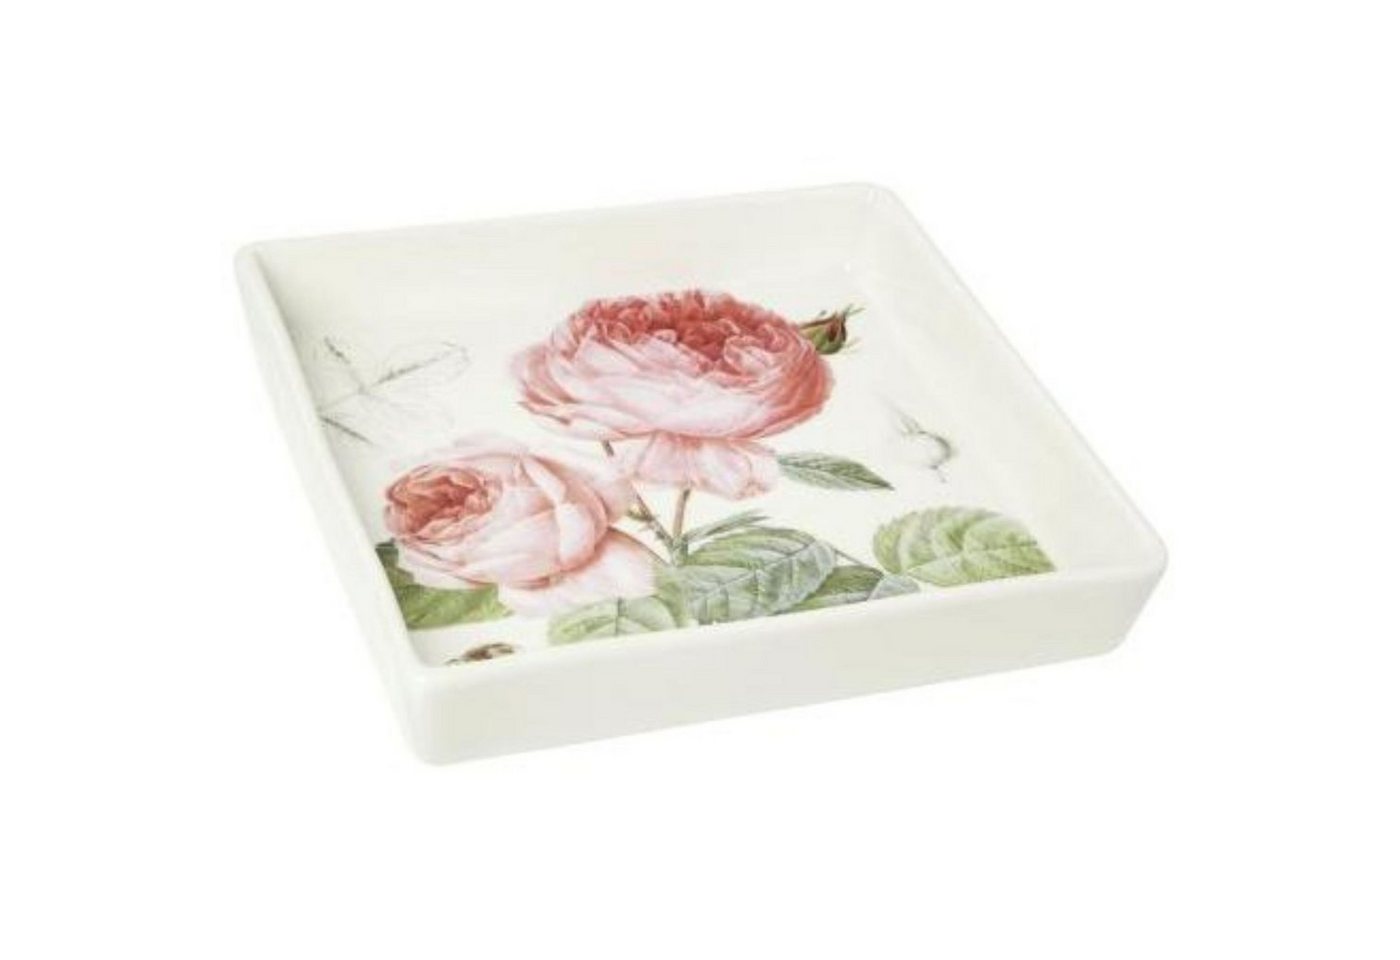 IHR Dekoschale Porzellanschale Elisabeth 18cm Schale Teller Gedeckter Blumen Frühling Tisch Rosen Rose Weiß Grün Rosa Pink von IHR